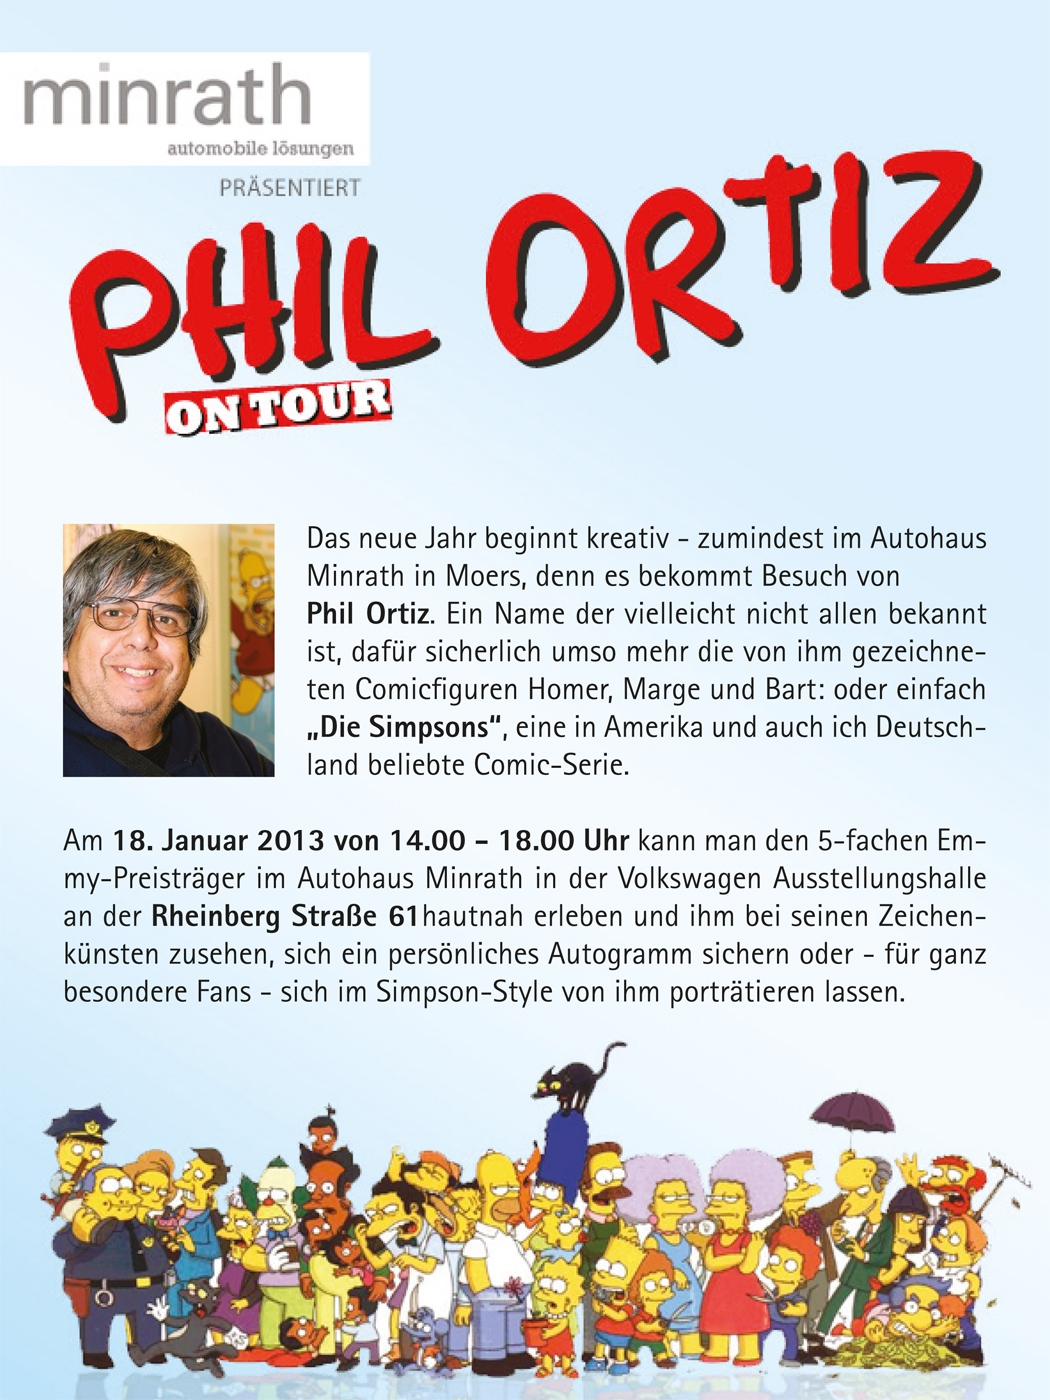 Phil Ortiz (Zeichner der Simpsons) am 18.01.13 im Autohaus Minrath in Moers